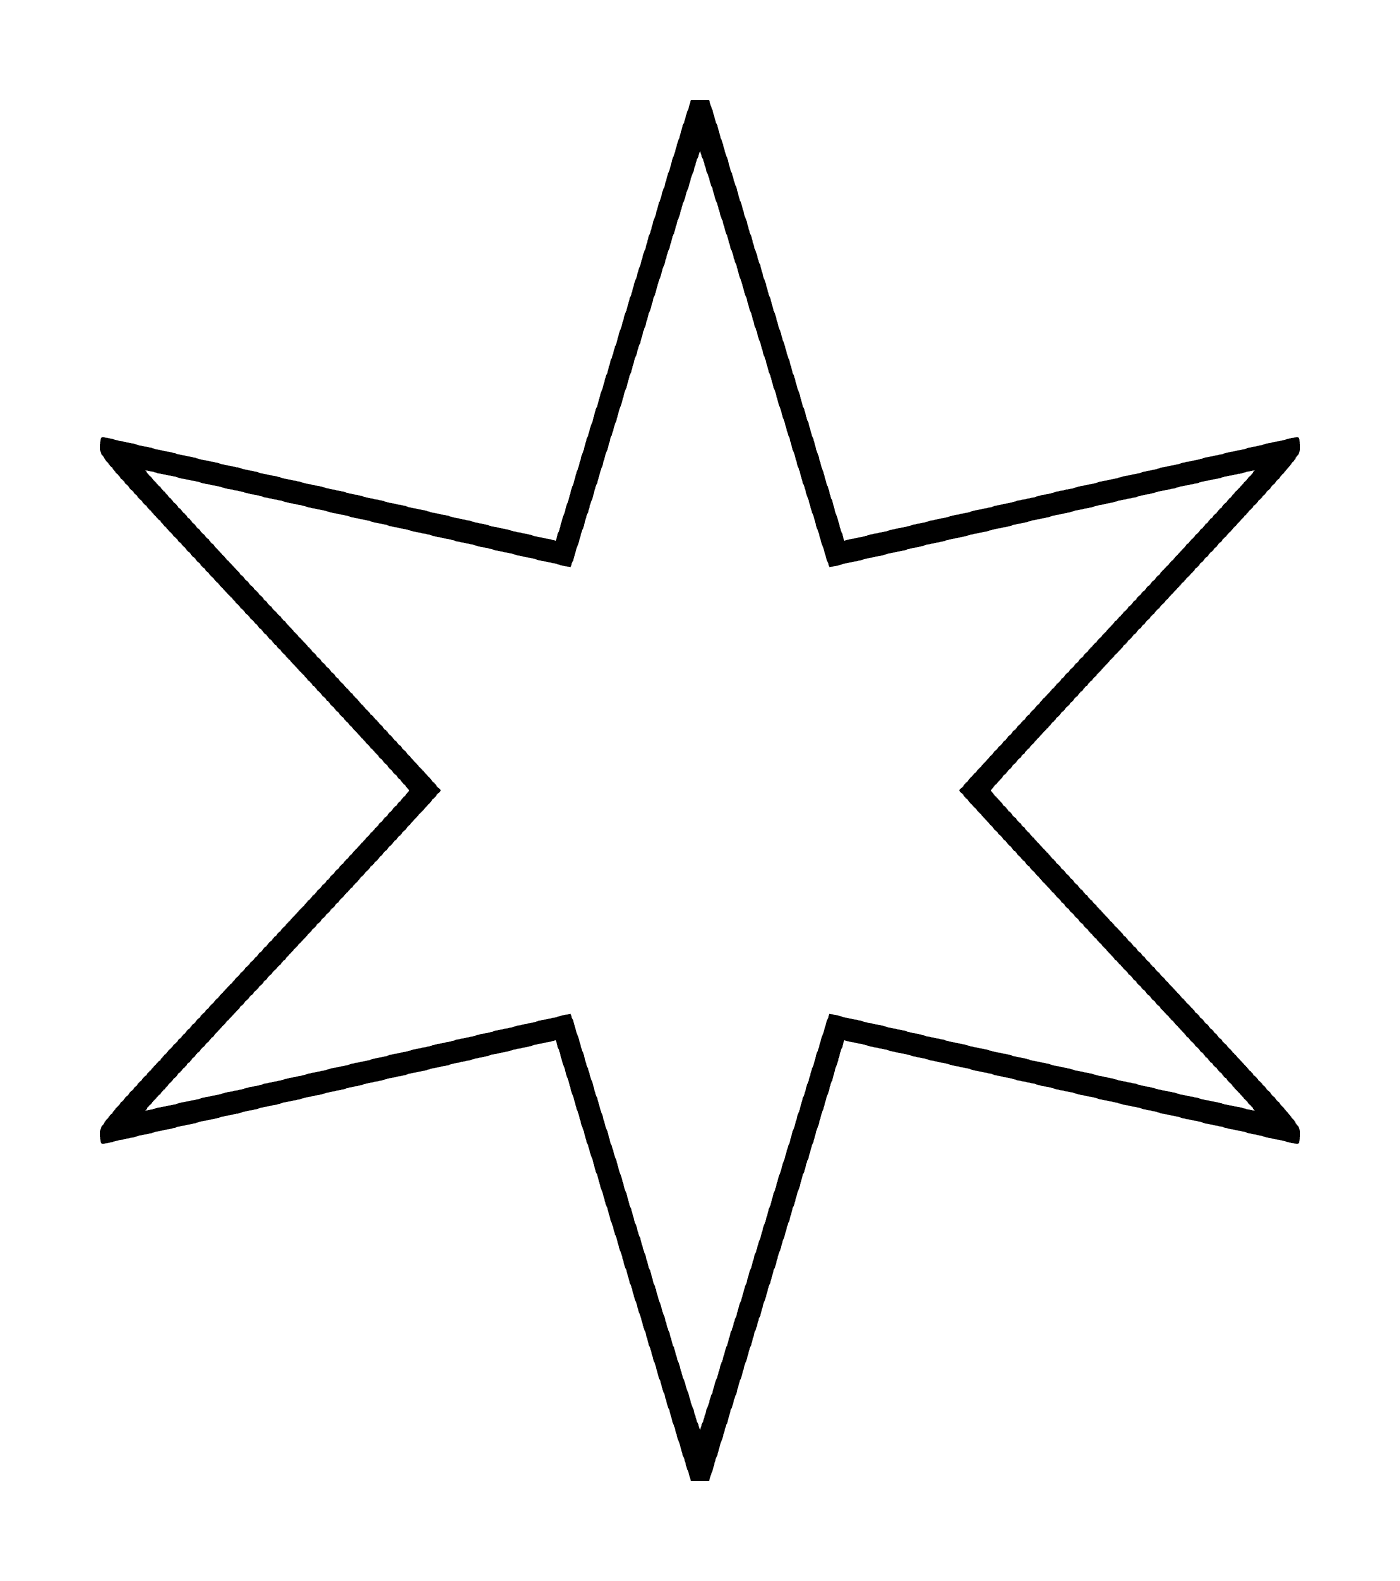  Uma estrela de seis pontas que se assemelha a uma flor 